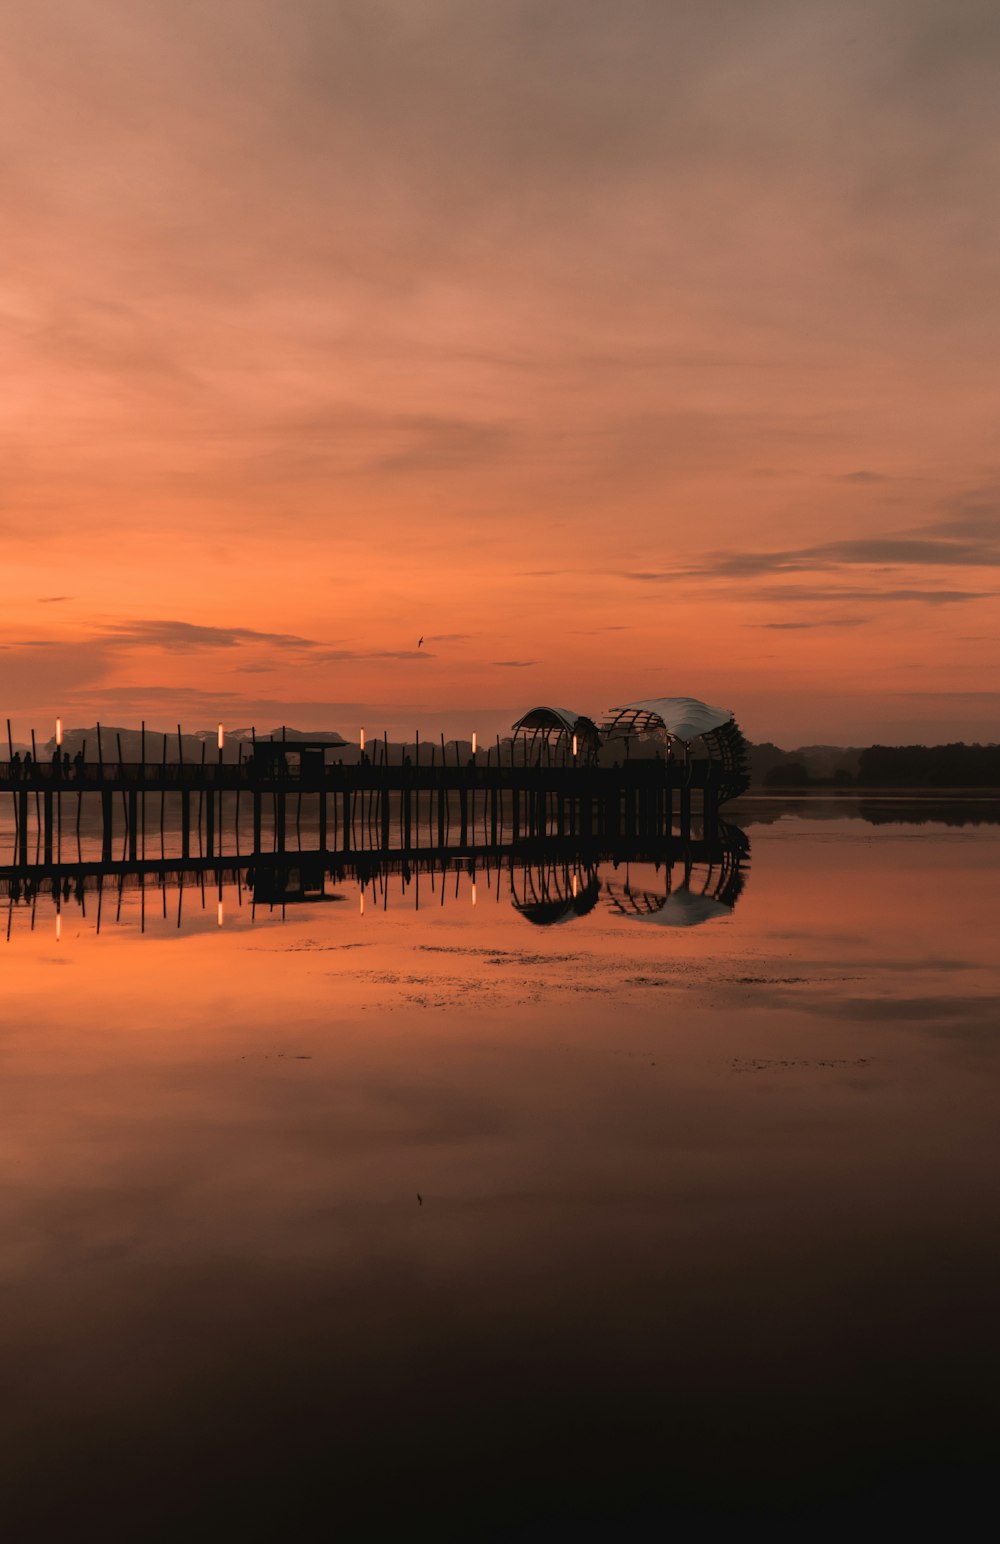 Silueta del muelle en el lago durante la puesta del sol